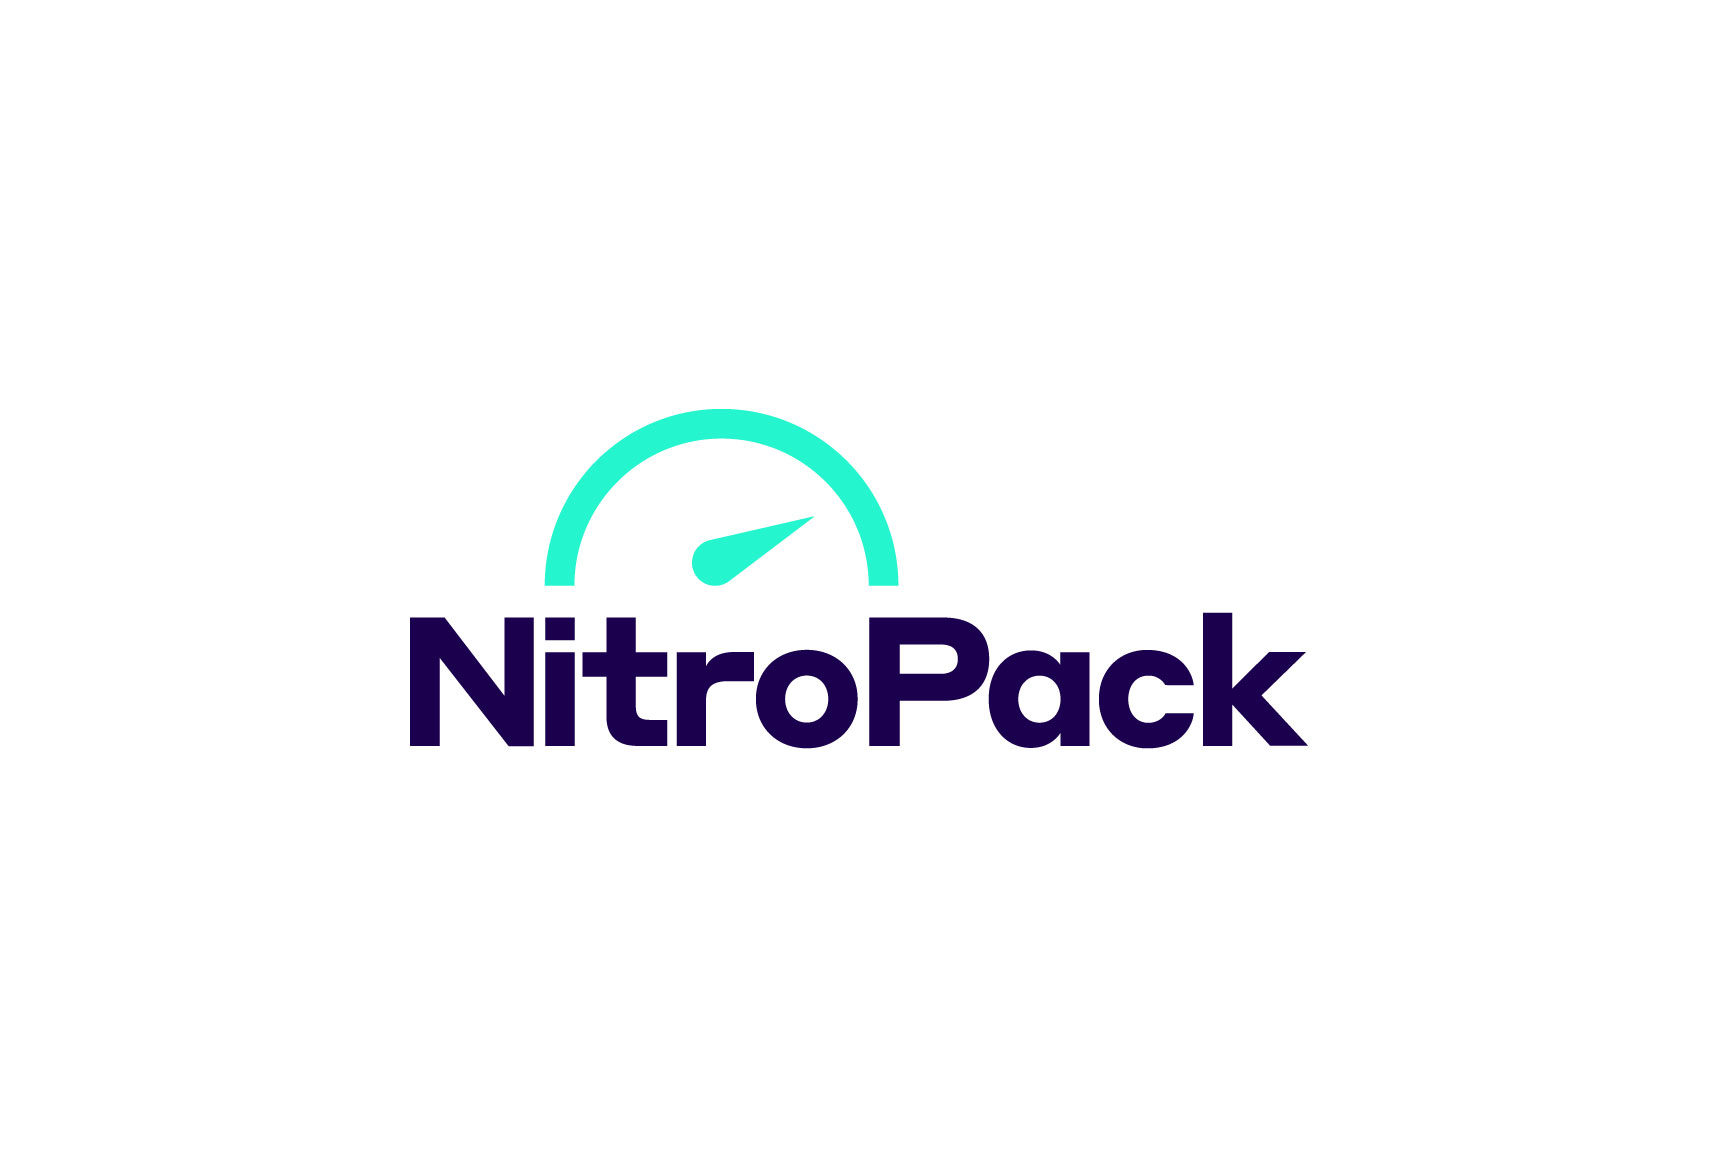 NitroPack masthead image